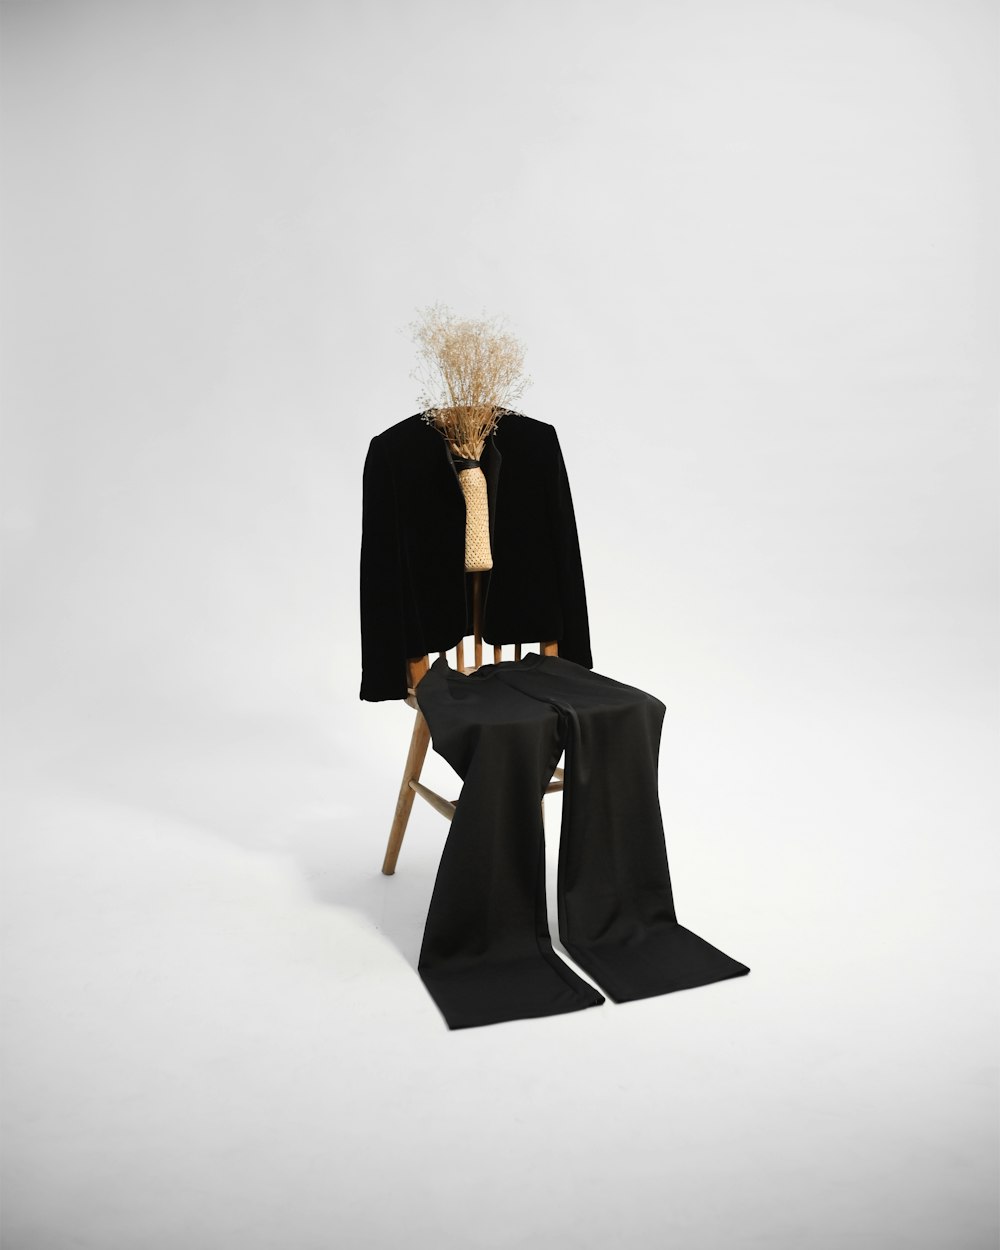 Frau im schwarzen Mantel sitzt auf braunem Holzstuhl